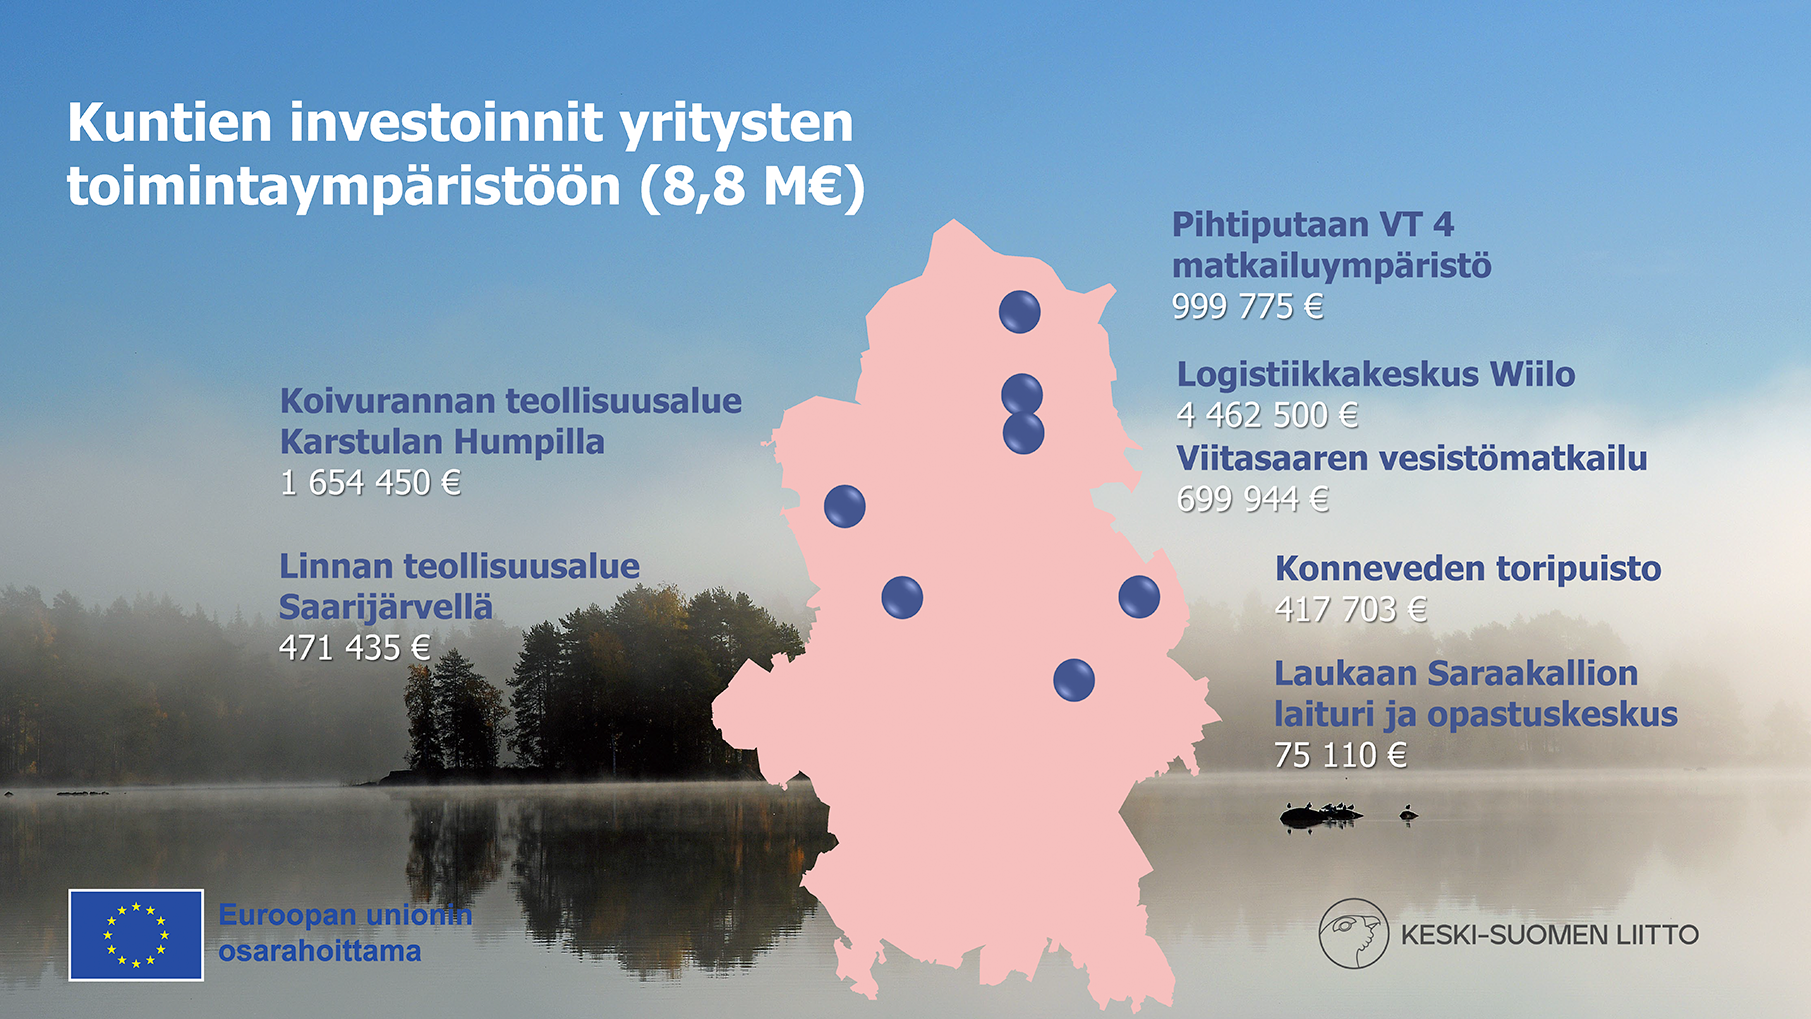 Keski-Suomen kuntien JTF-rahoituksella tuetut investoinnit kartalle sijoitettuna. Nämä löytyvät leipätekstistä kuvan alta. 